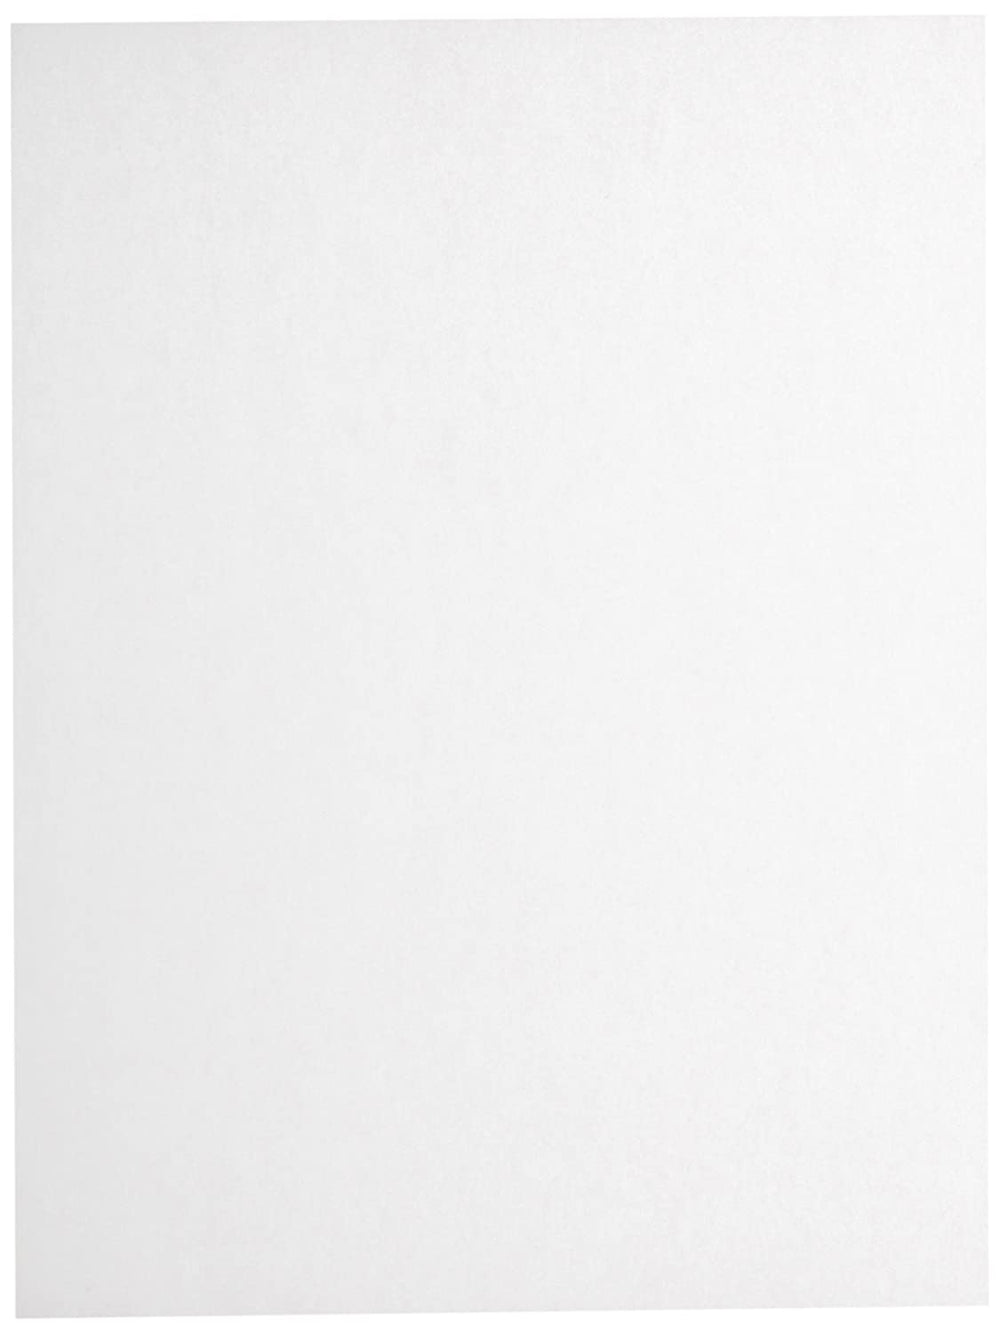 Sax boceto y papel de Trace – 9 x 12 inches – 500 unidades – Blanco - Arteztik